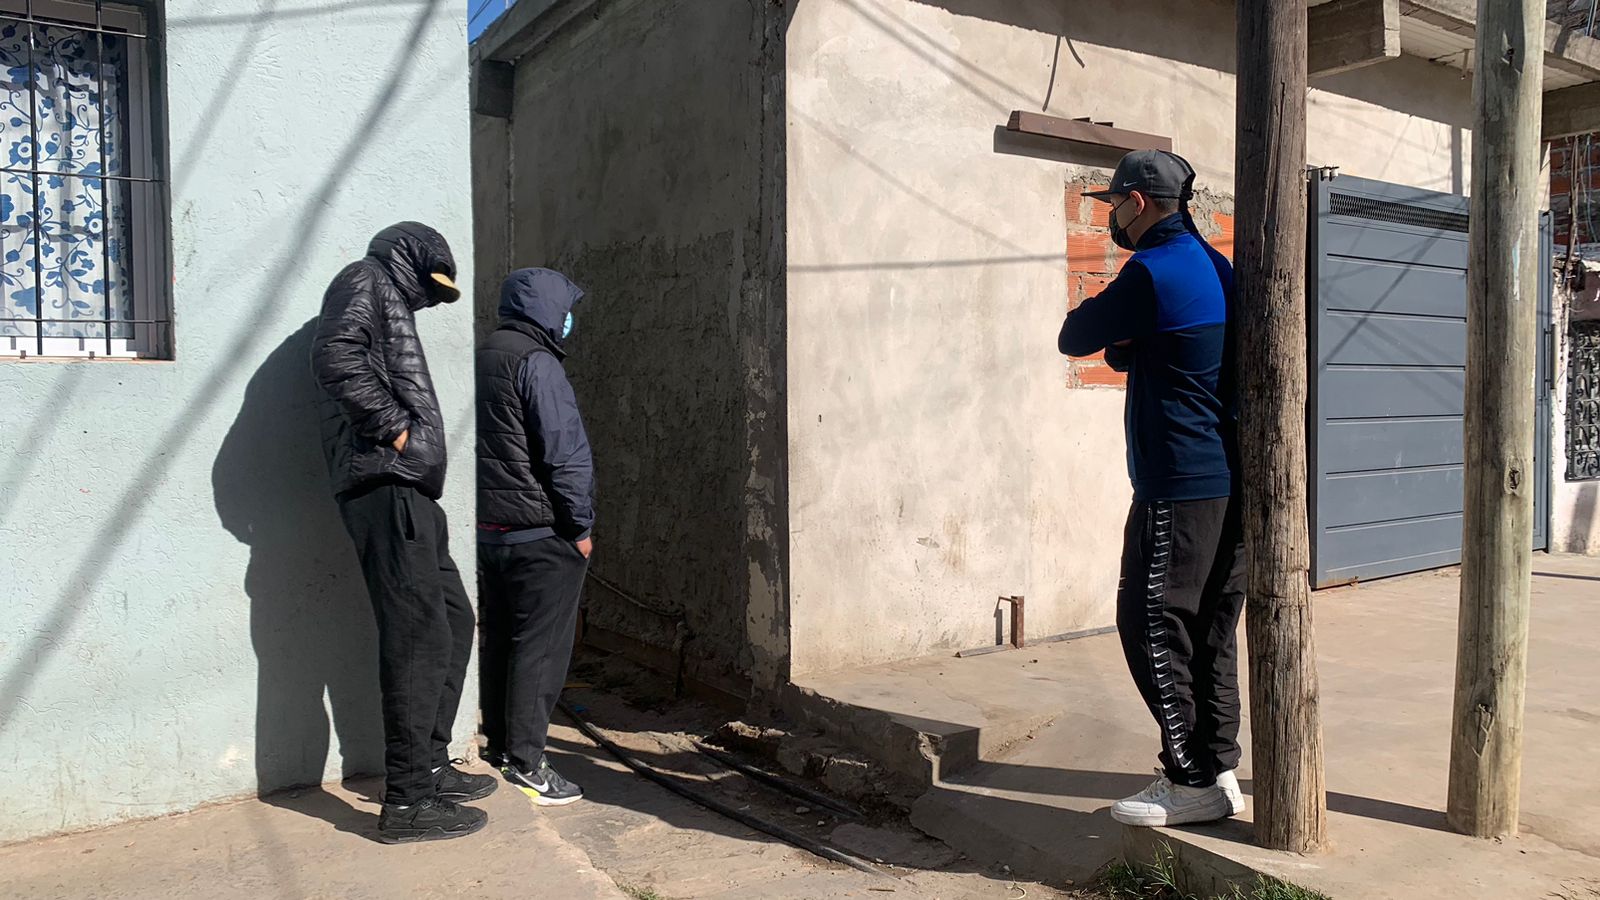 Cómo funciona la guardia urbana villera de Las Antenas, el barrio que resiste la llegada de un capo narco con armas y vigilias vecinales